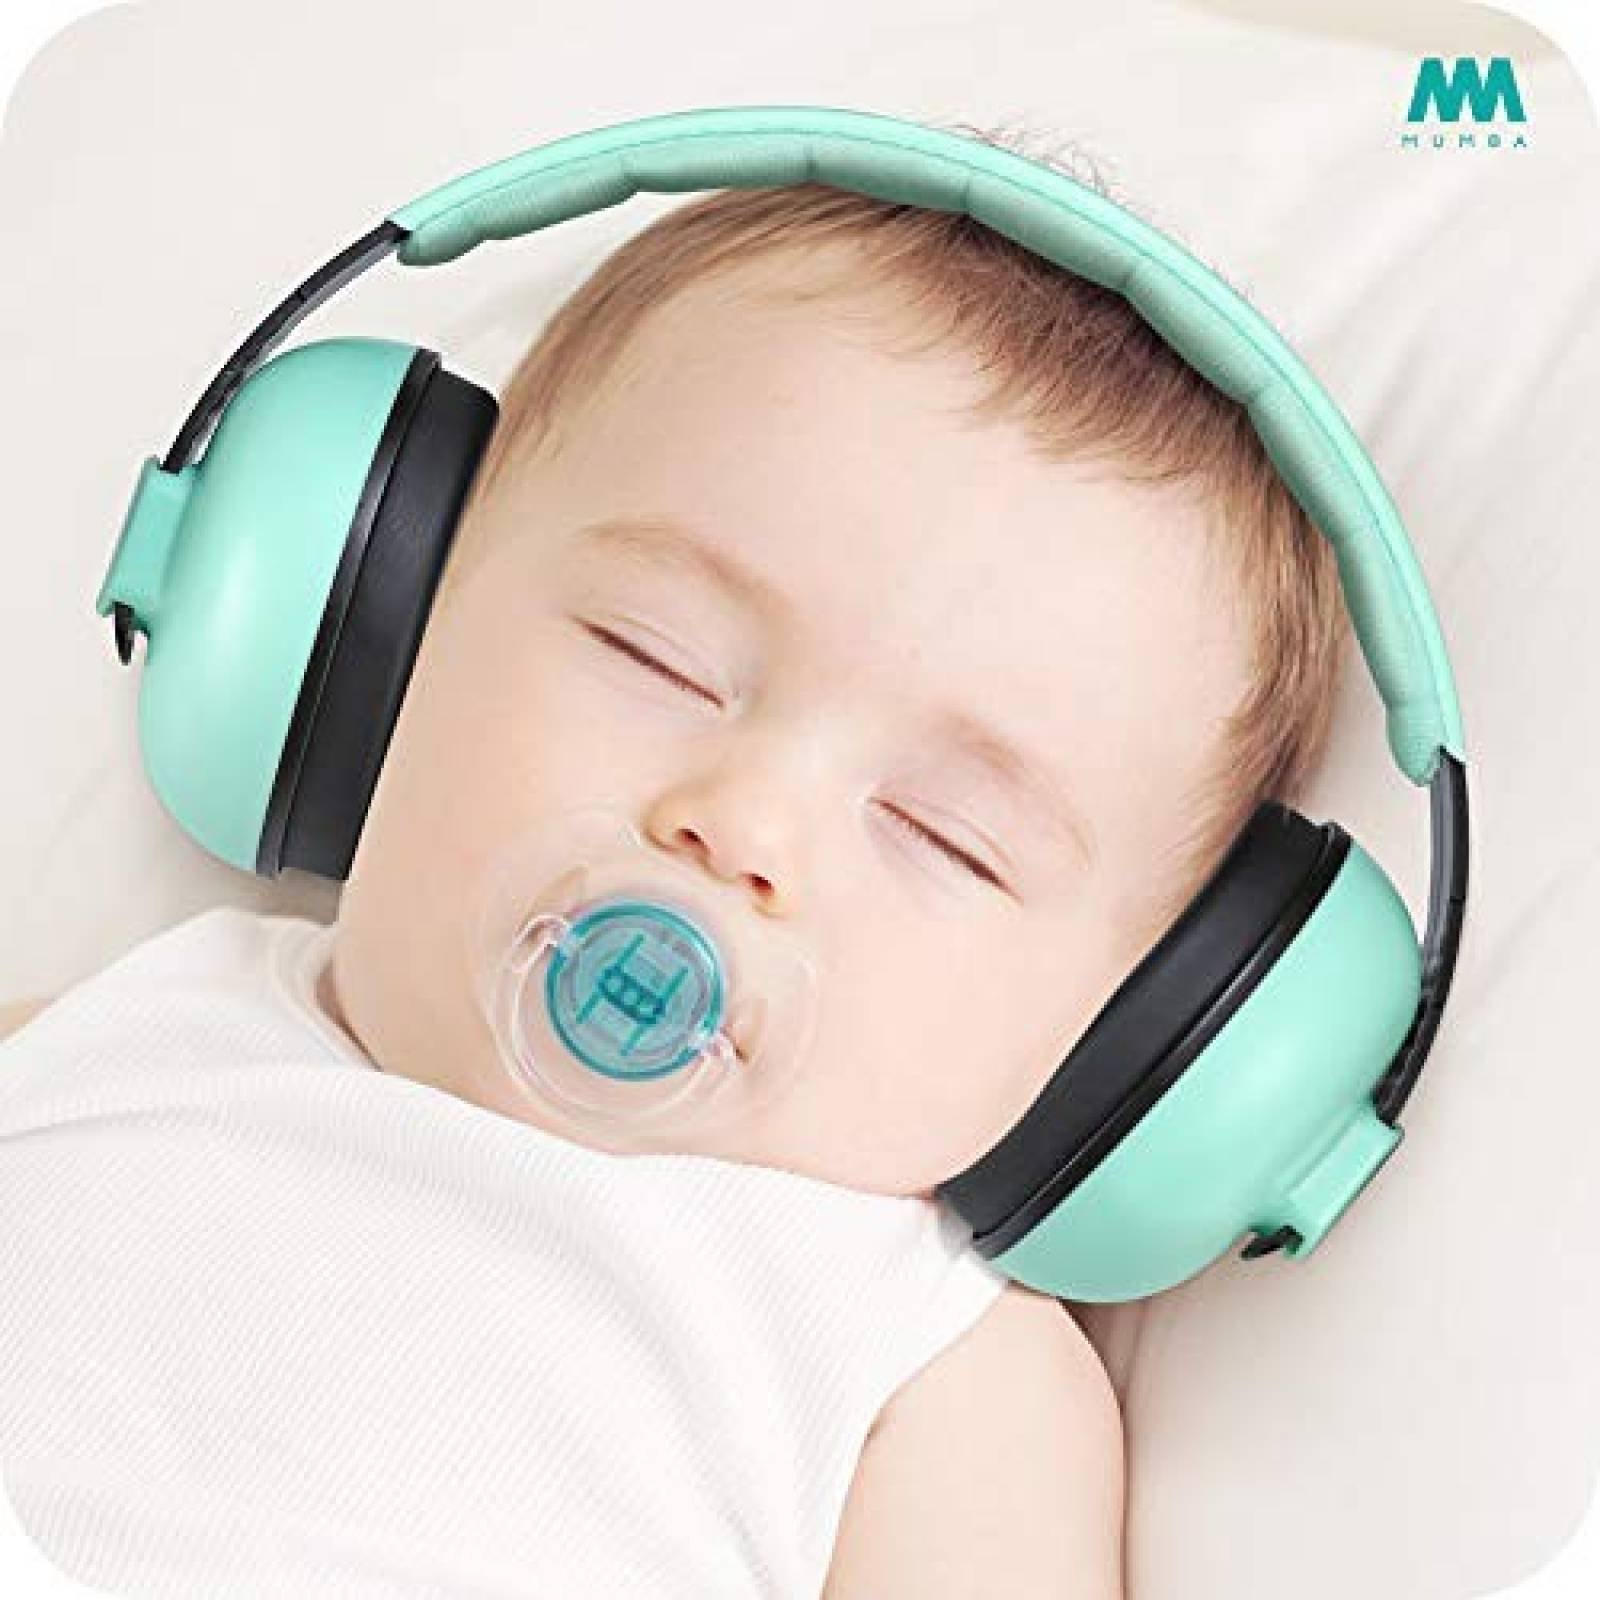 Protección Bebé Mumba para Oídos 3-24 Meses Efectivo -Aqua